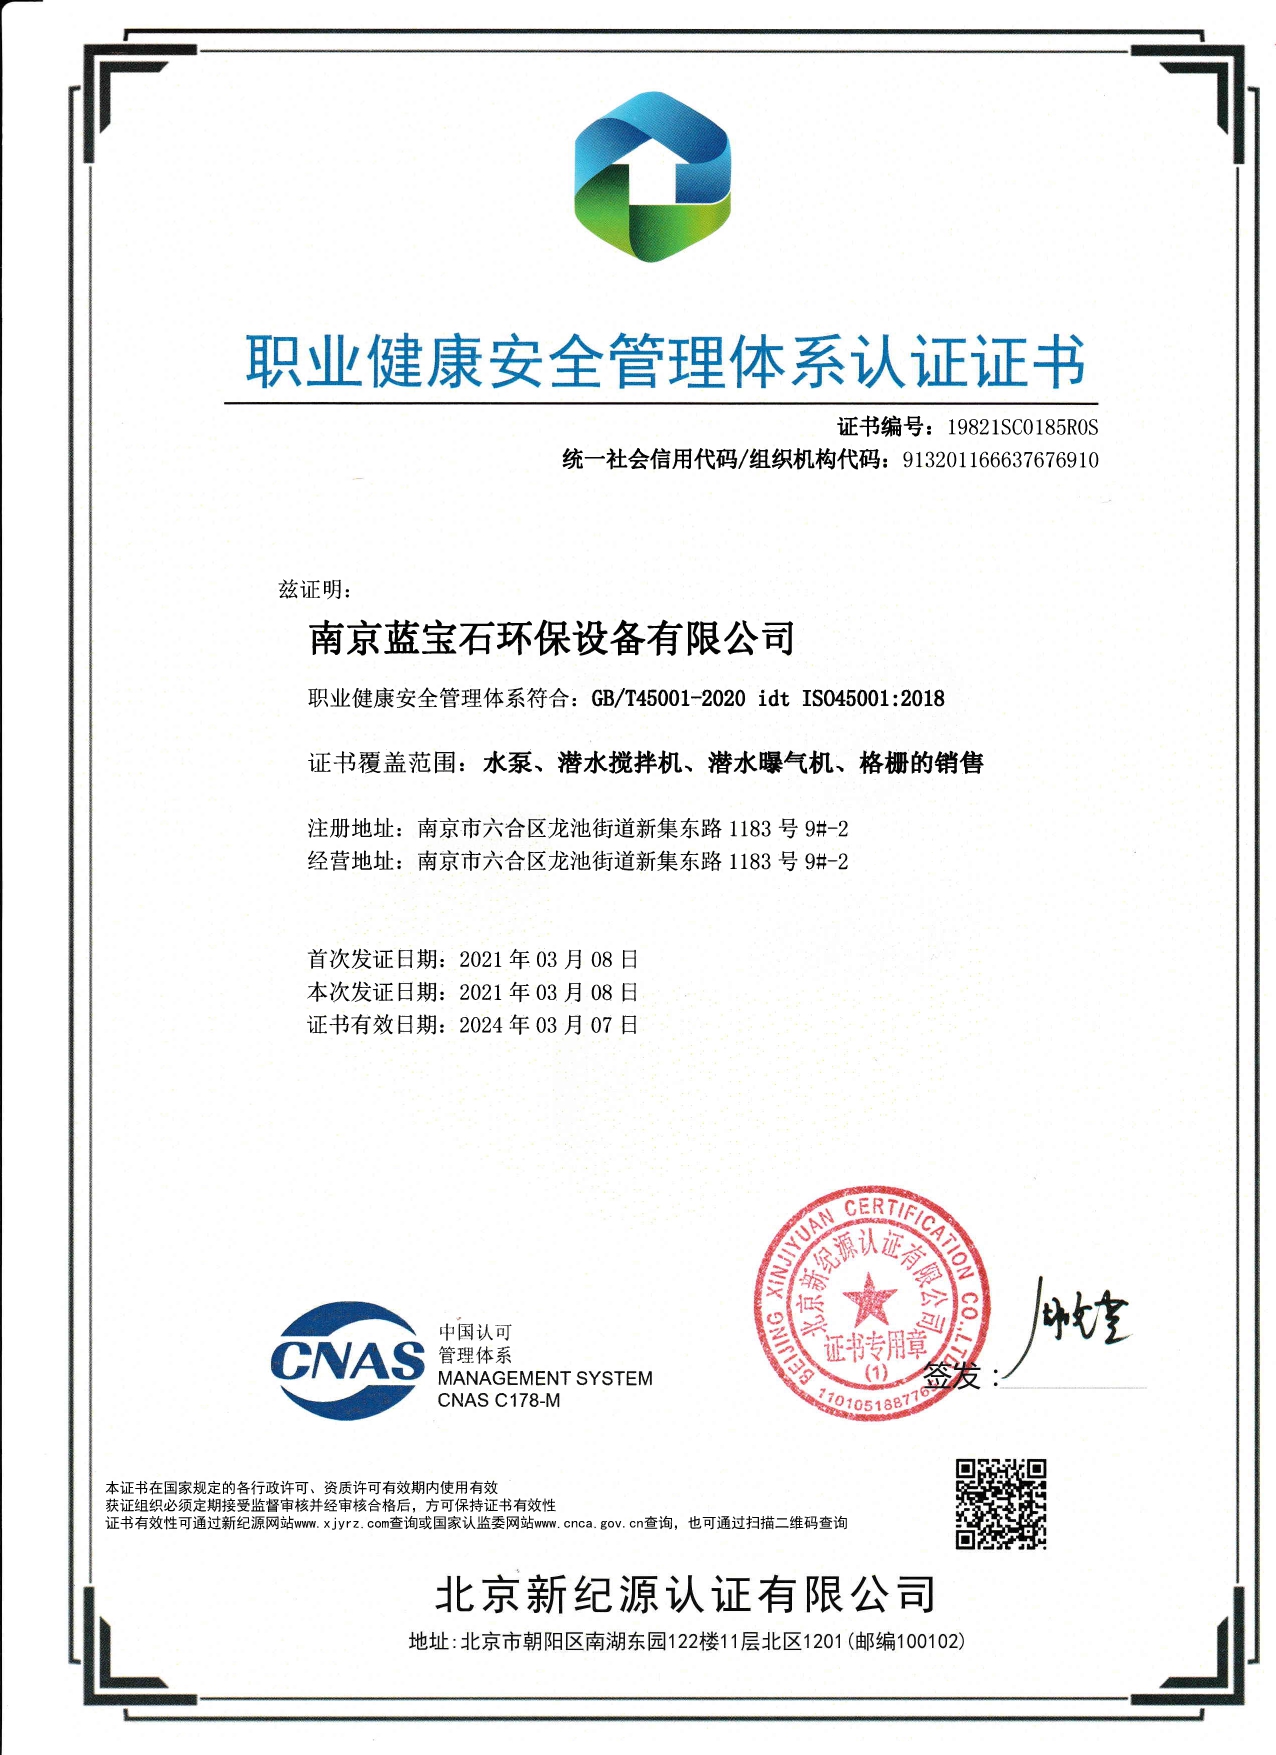 南京蓝宝石环保设备有限公司通过职业健康安全管理体系认证